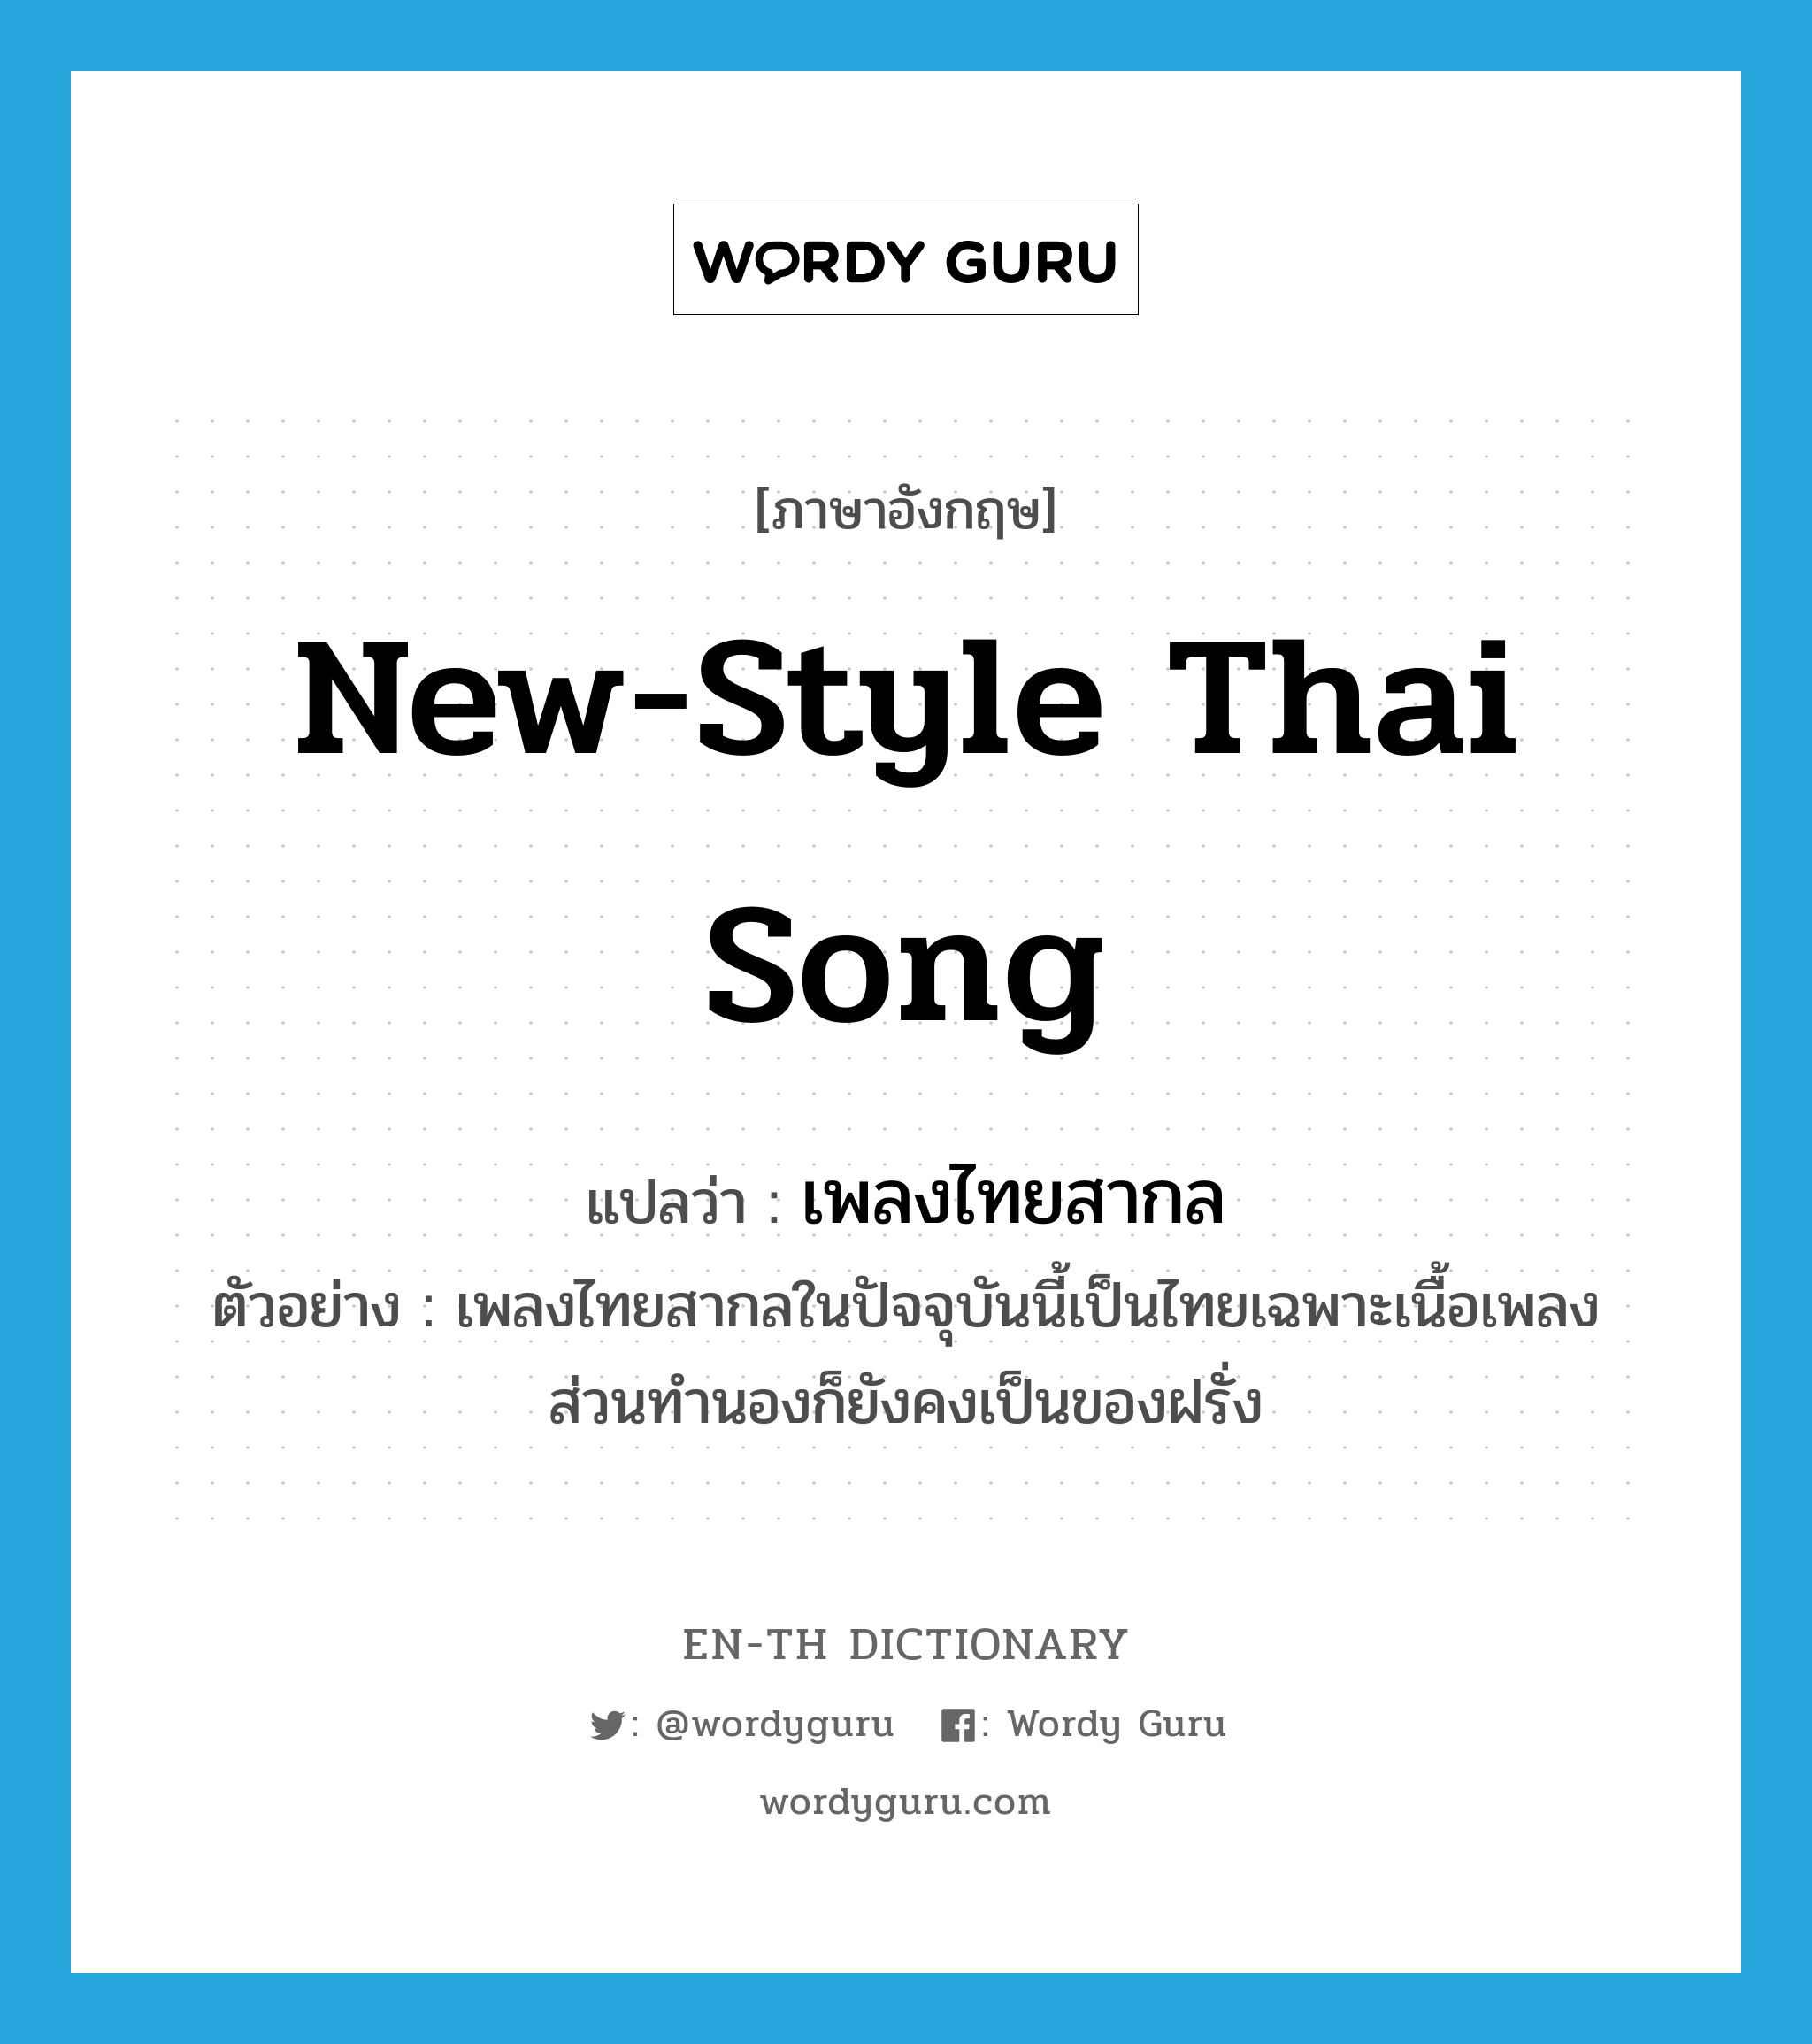 new-style Thai song แปลว่า?, คำศัพท์ภาษาอังกฤษ new-style Thai song แปลว่า เพลงไทยสากล ประเภท N ตัวอย่าง เพลงไทยสากลในปัจจุบันนี้เป็นไทยเฉพาะเนื้อเพลง ส่วนทำนองก็ยังคงเป็นของฝรั่ง หมวด N